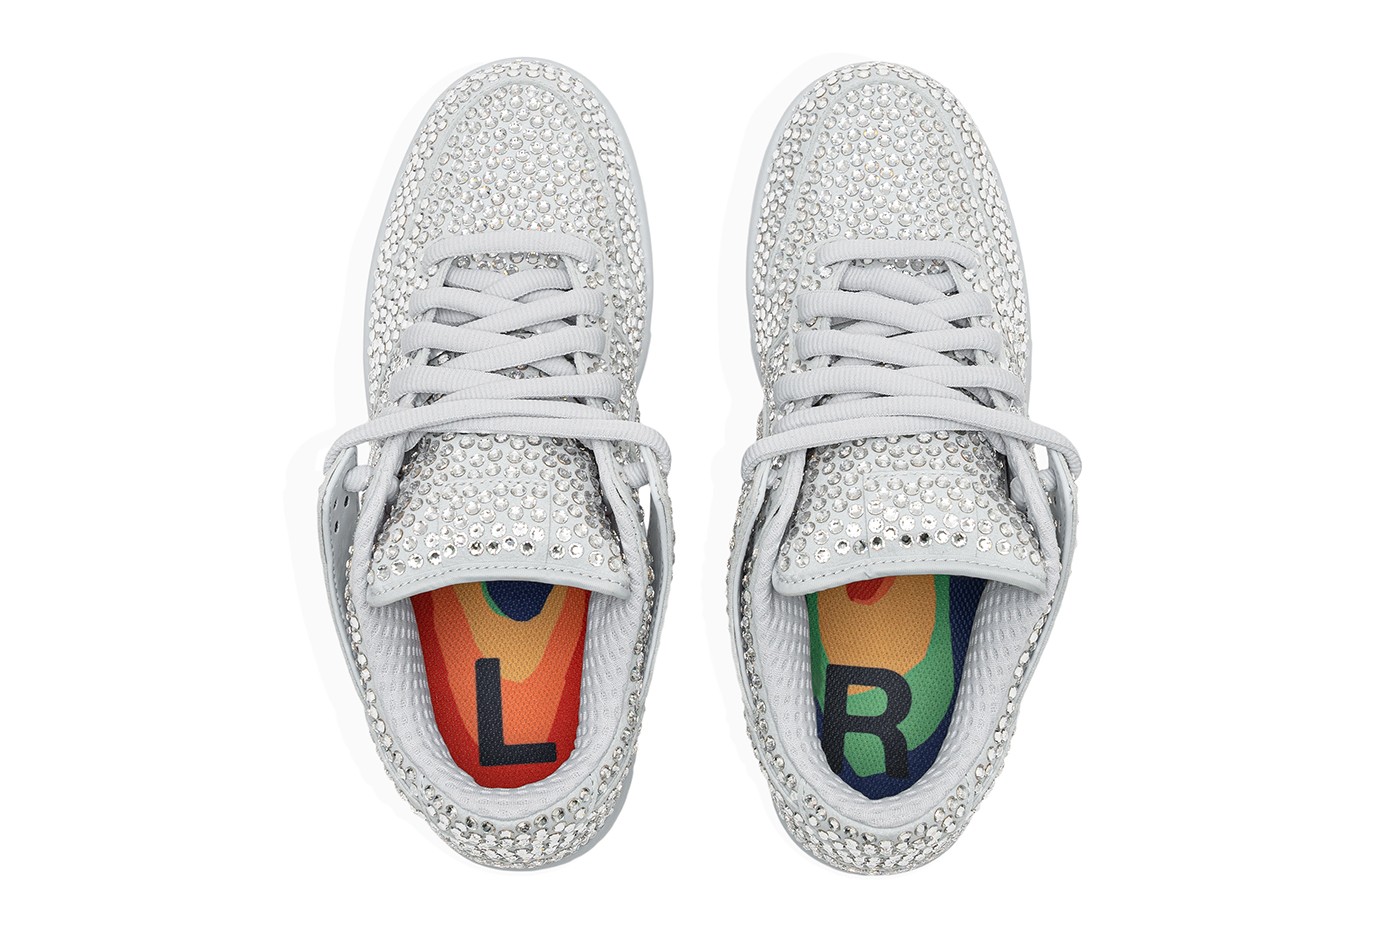 Nike выпустил кроссовки, полностью покрытые кристаллами Swarovski (фото 4)